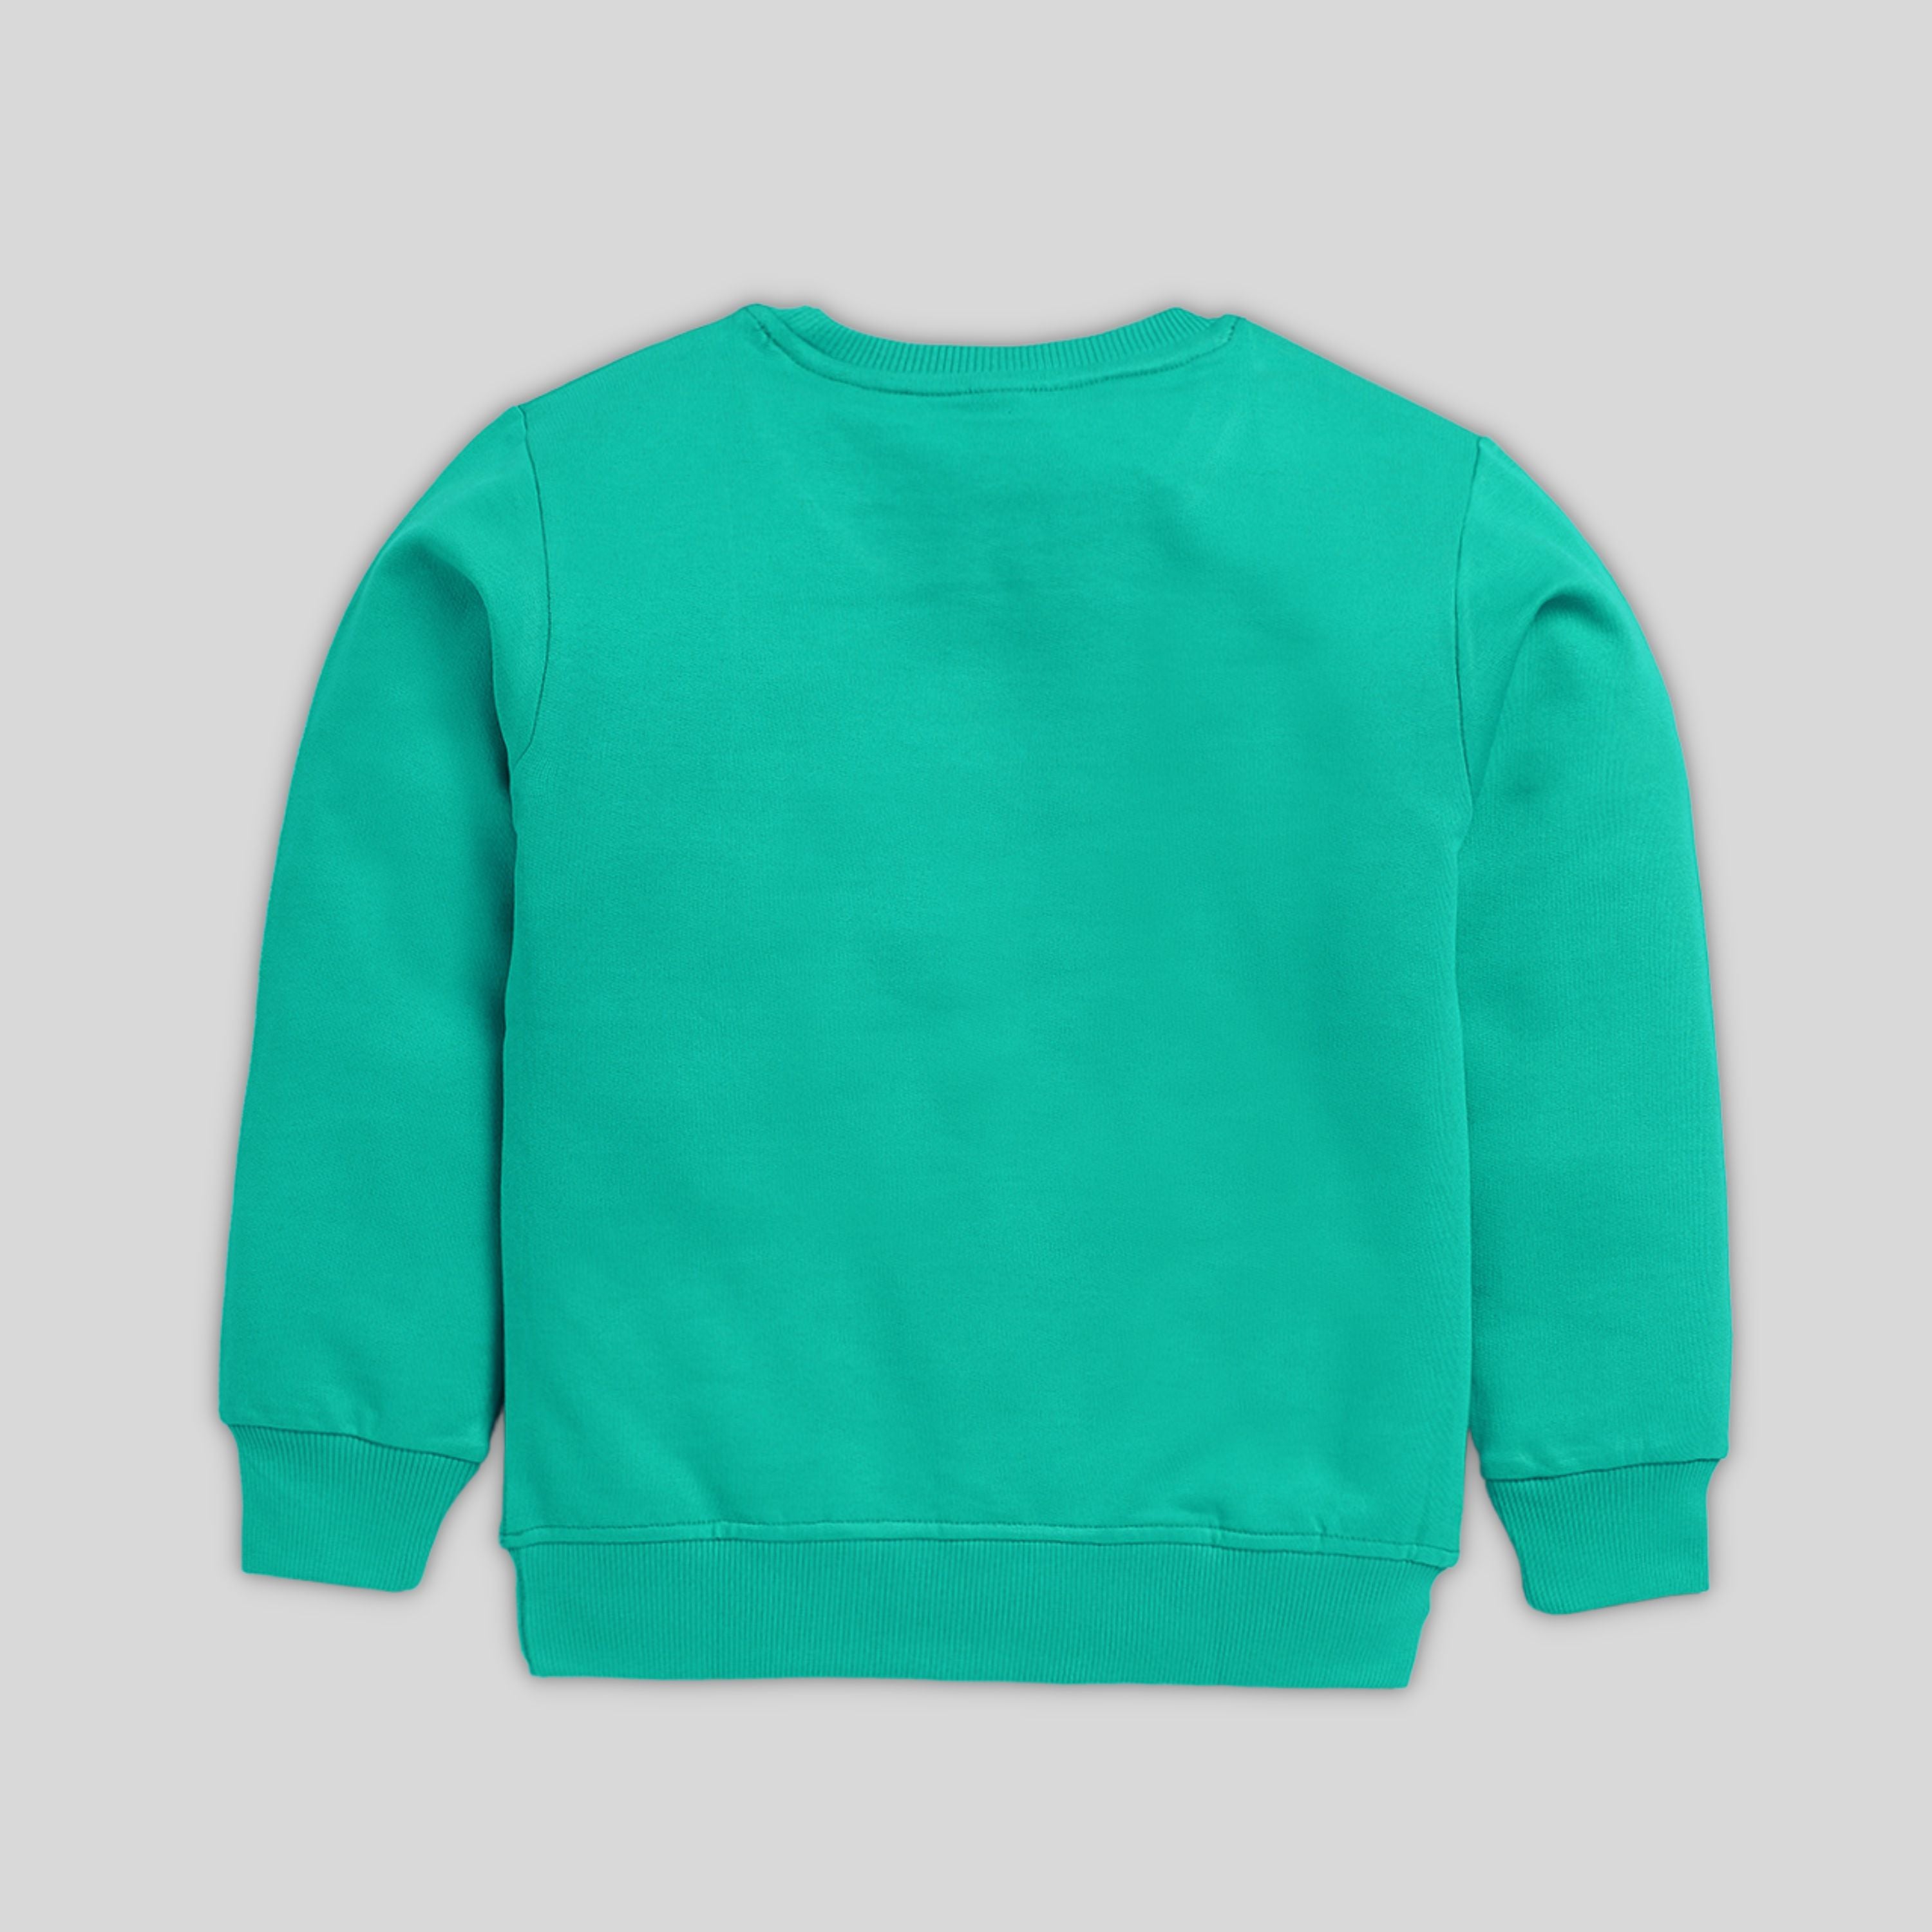 Printed Sweatshirt For Boy-R. Green